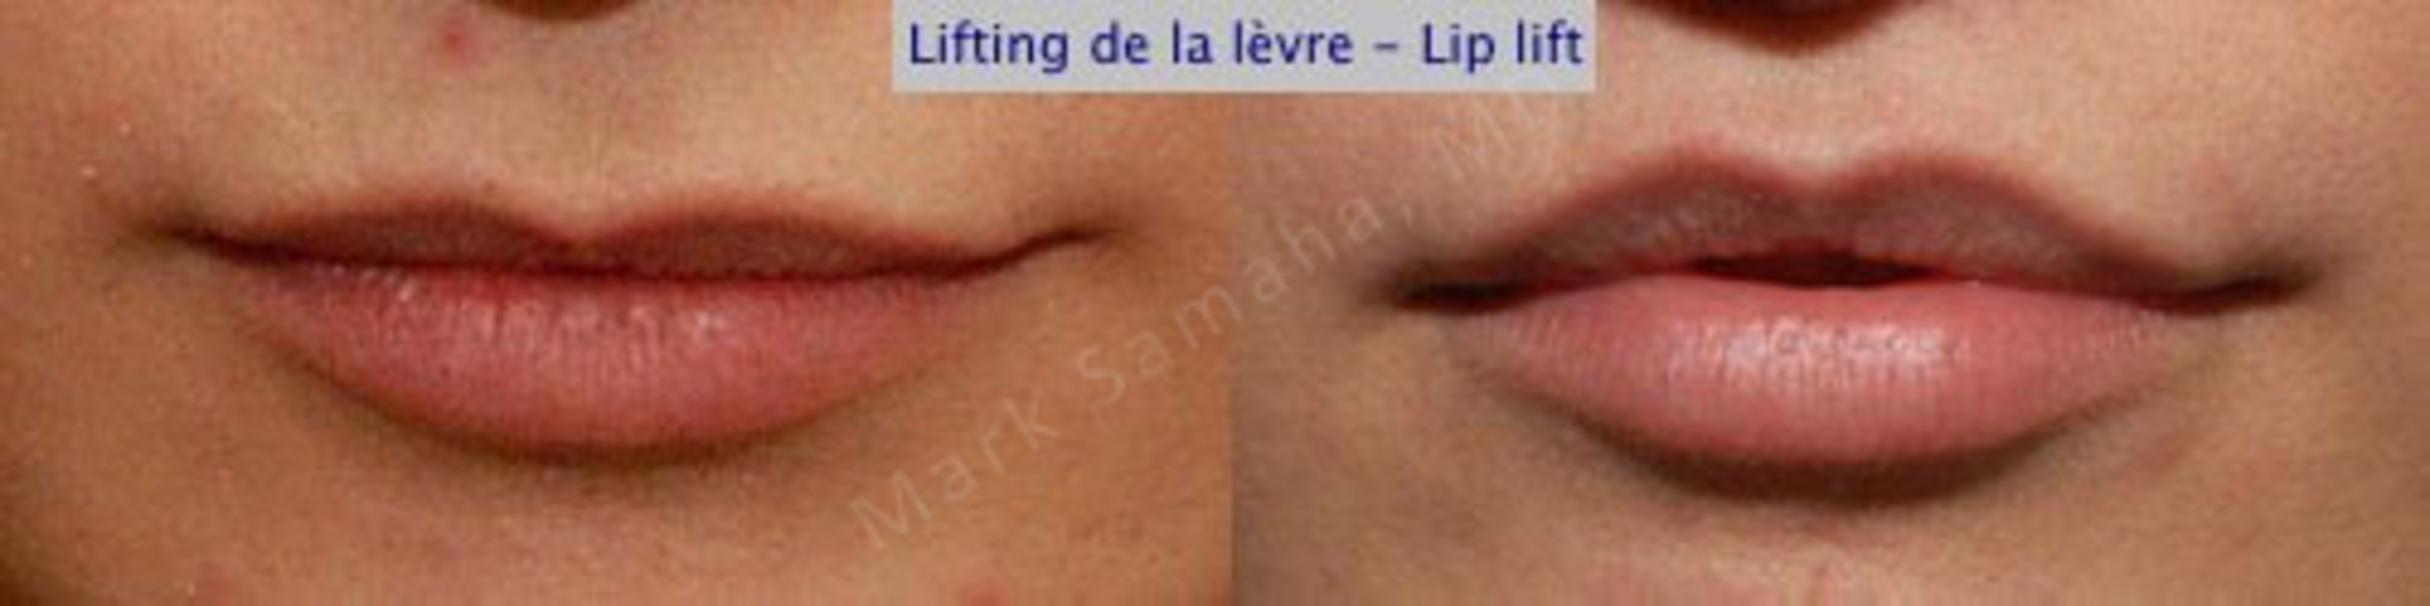 Before & After Lip Lift / Lifting de la lèvre supérieure Case 23 View #1 View in Mount Royal, QC